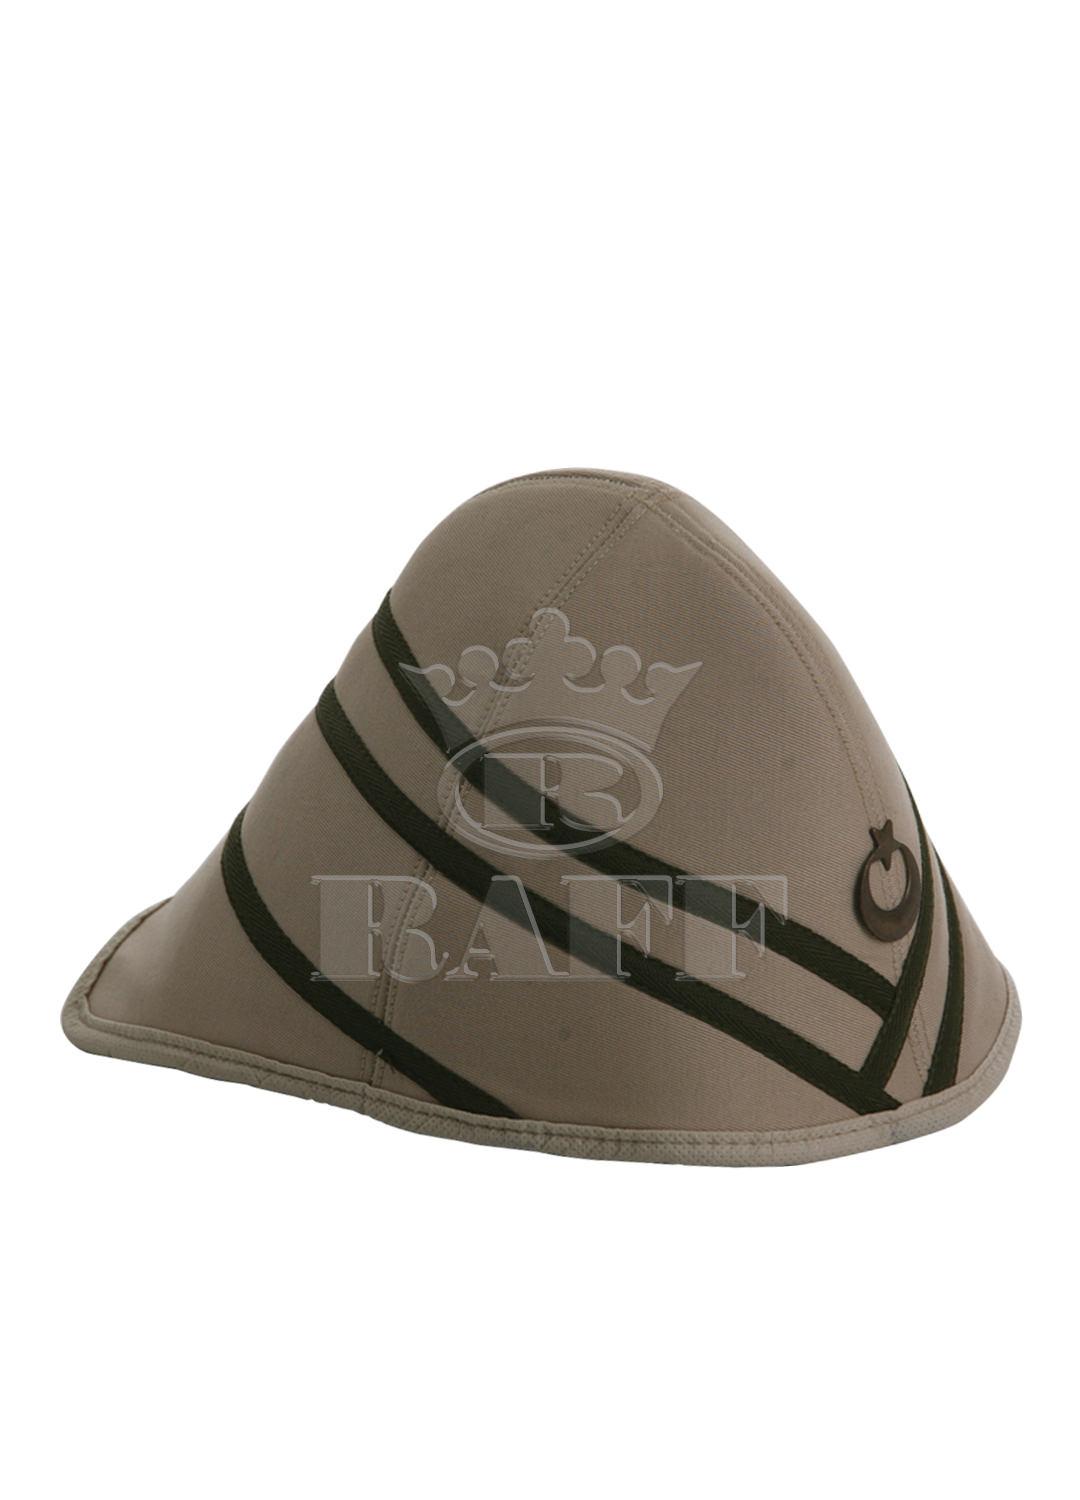 Sombrero para el oficiales de ejército